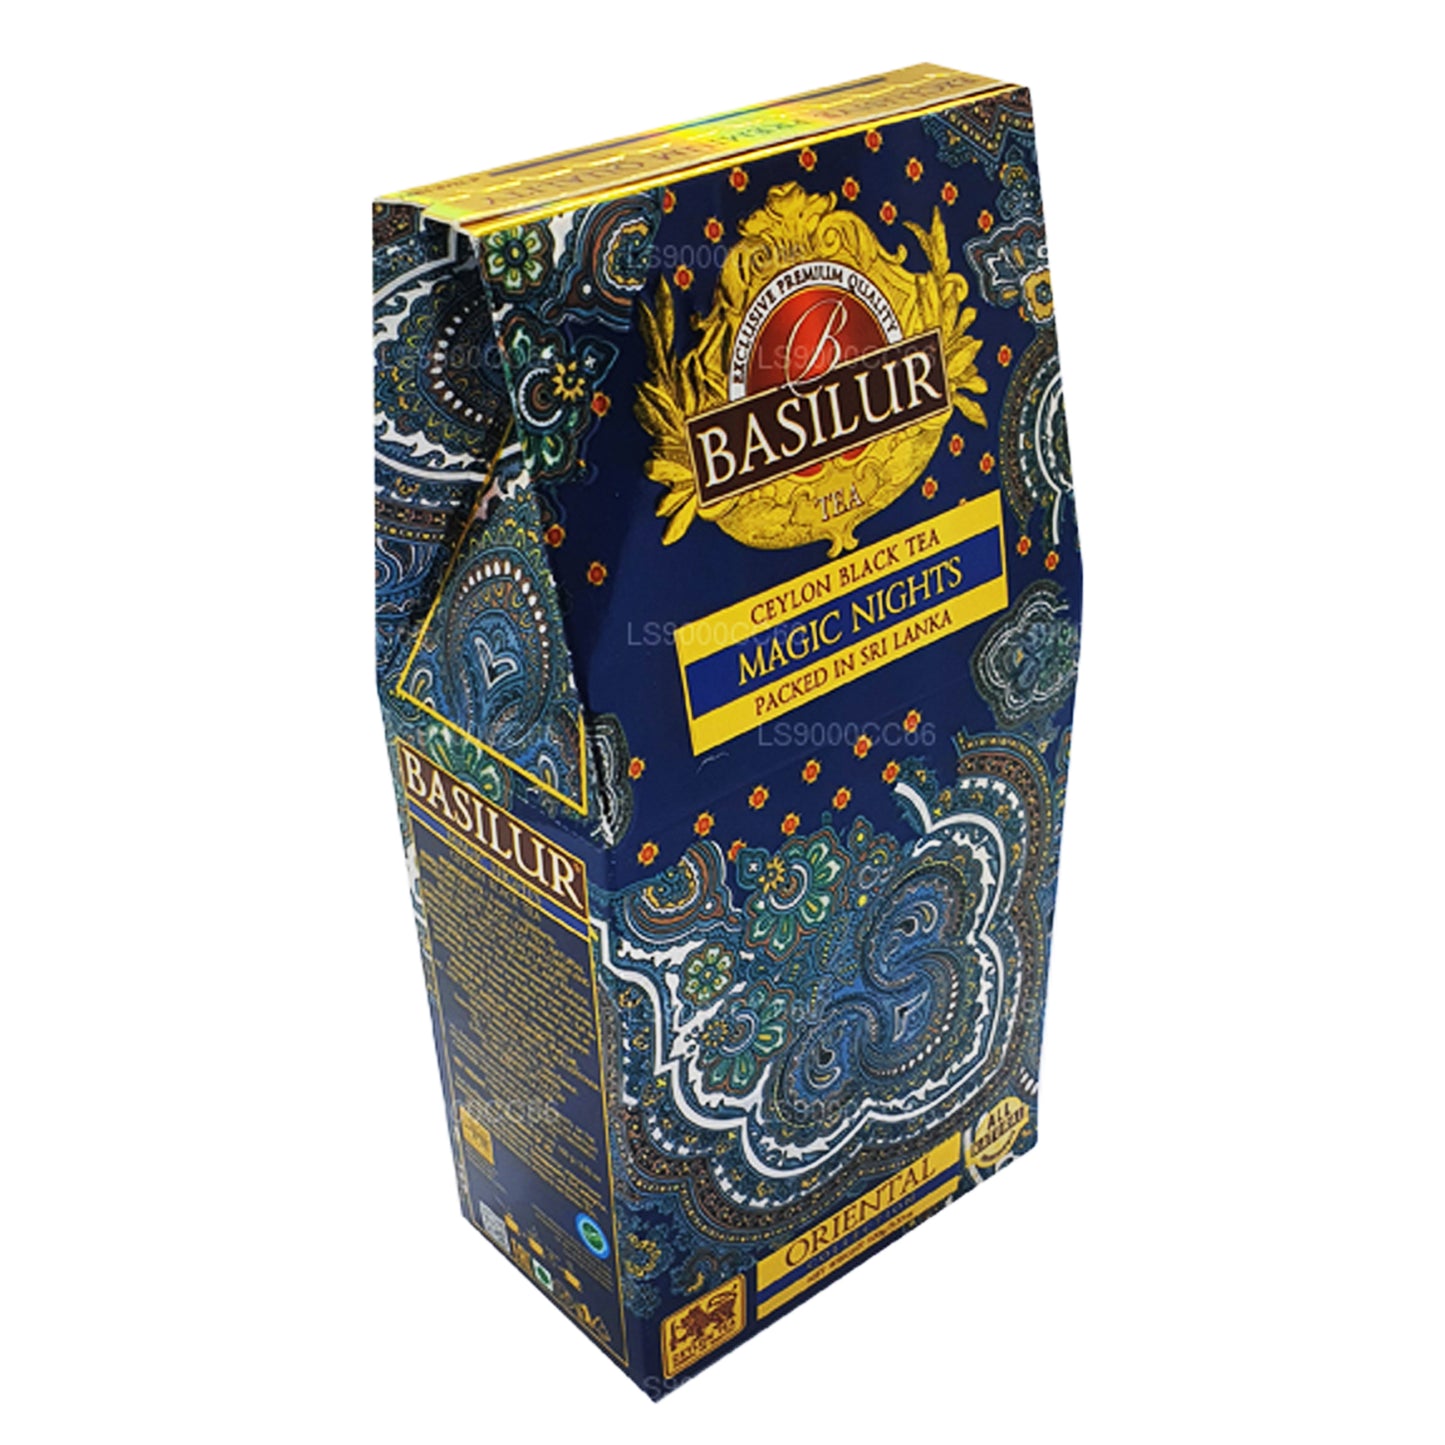 Basilur Magic Nights Ceylon thee met zwarte bladeren (100 g)